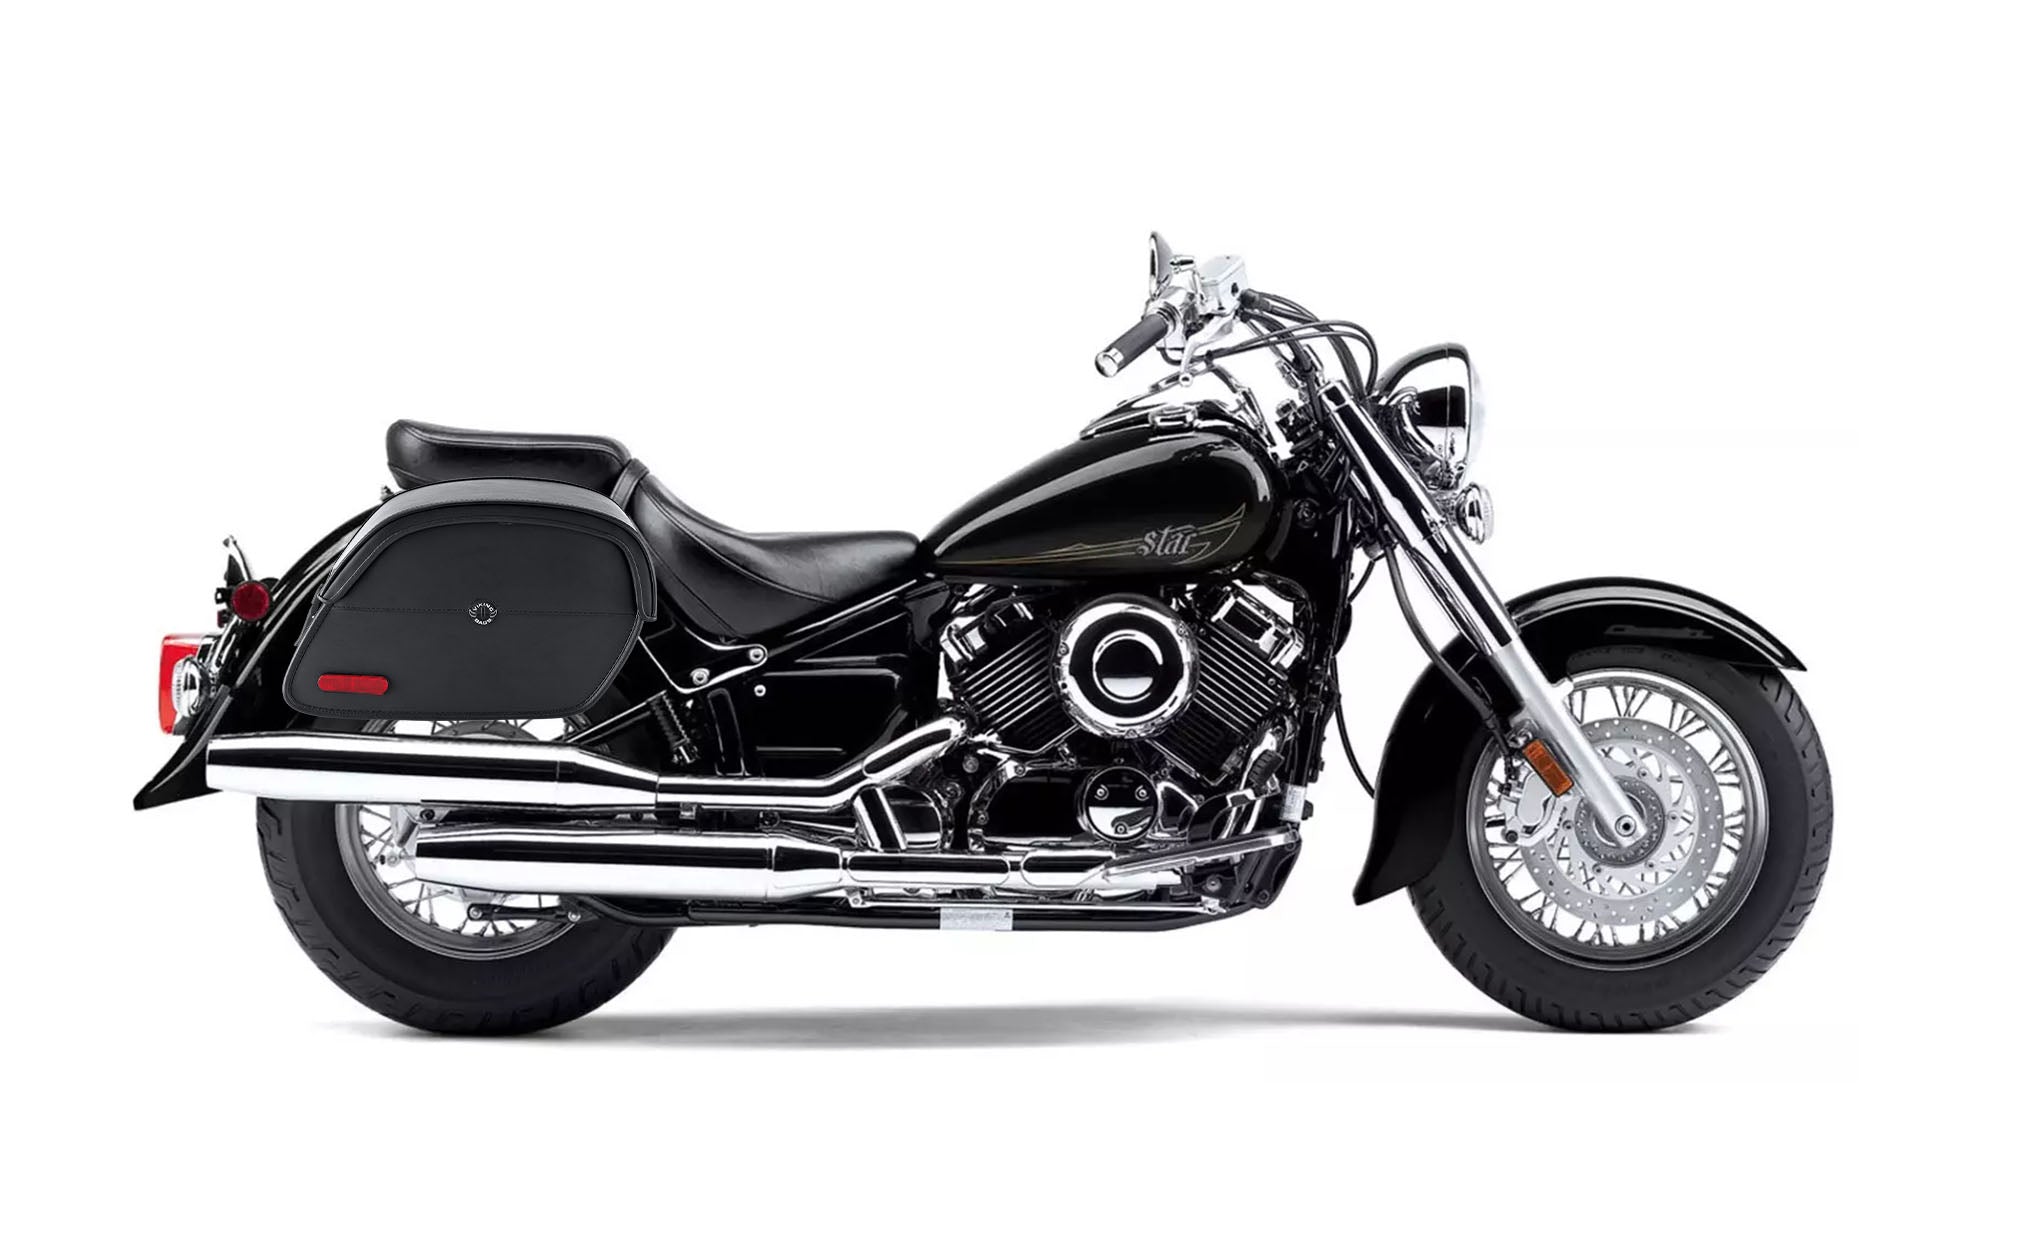 Viking California Large Yamaha V Star 650 Classic Xvs65A Leather Motorcycle Saddlebags on Bike Photo @expand